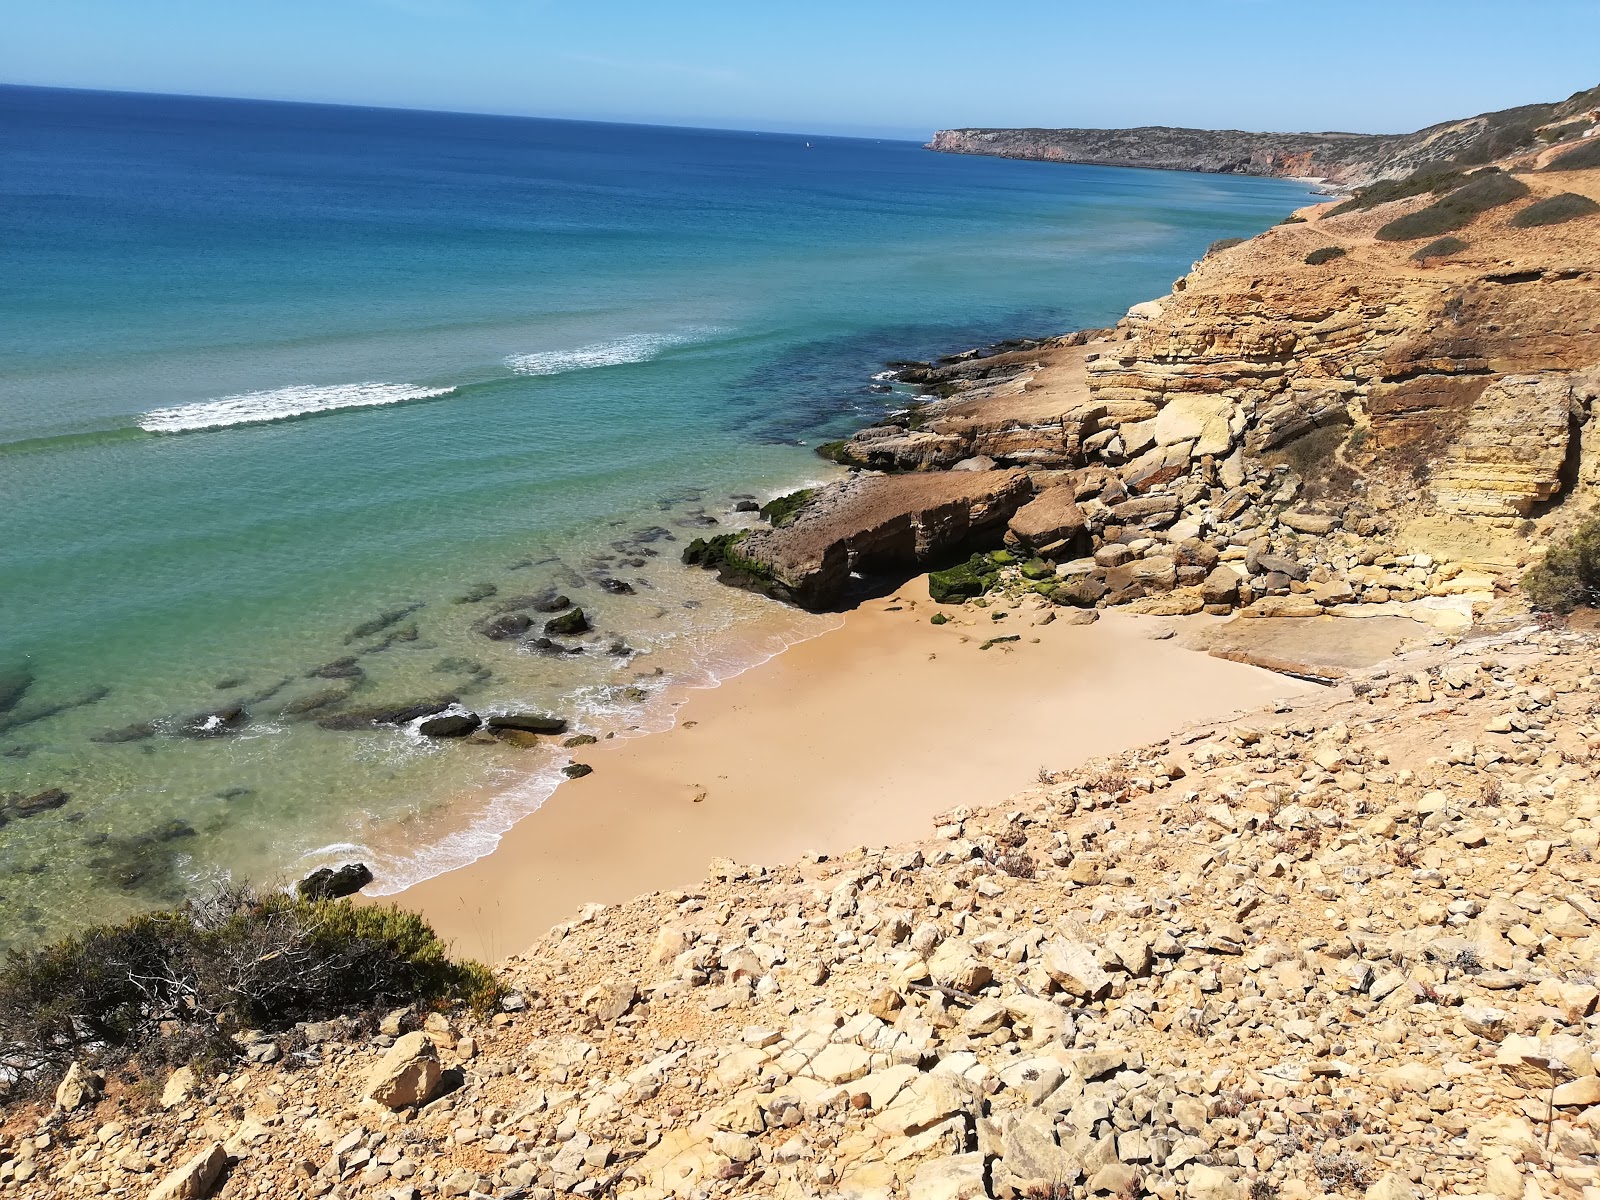 Foto di Praia Santa con una superficie del sabbia fine e luminosa